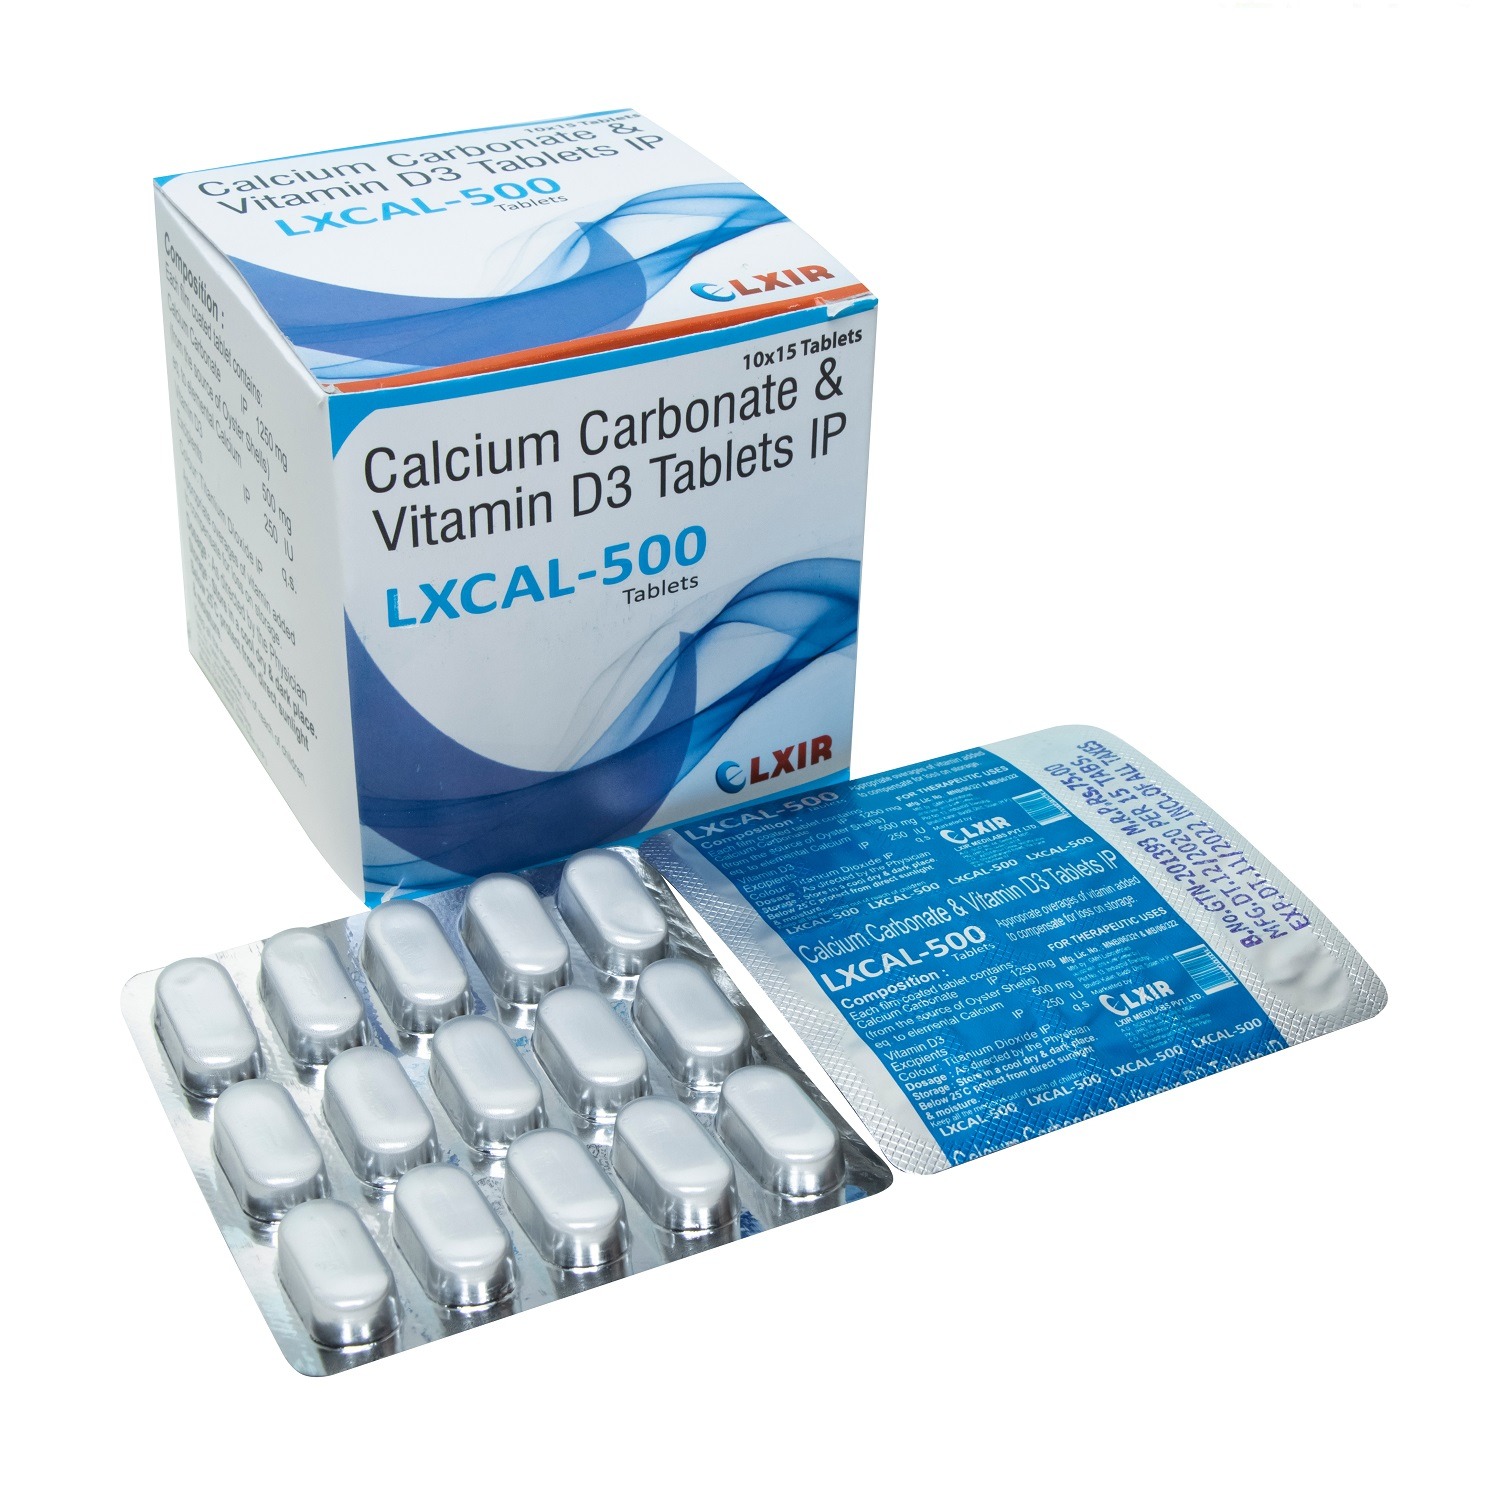 Calcium Carbonate & Vitamin D3 Tablets IP